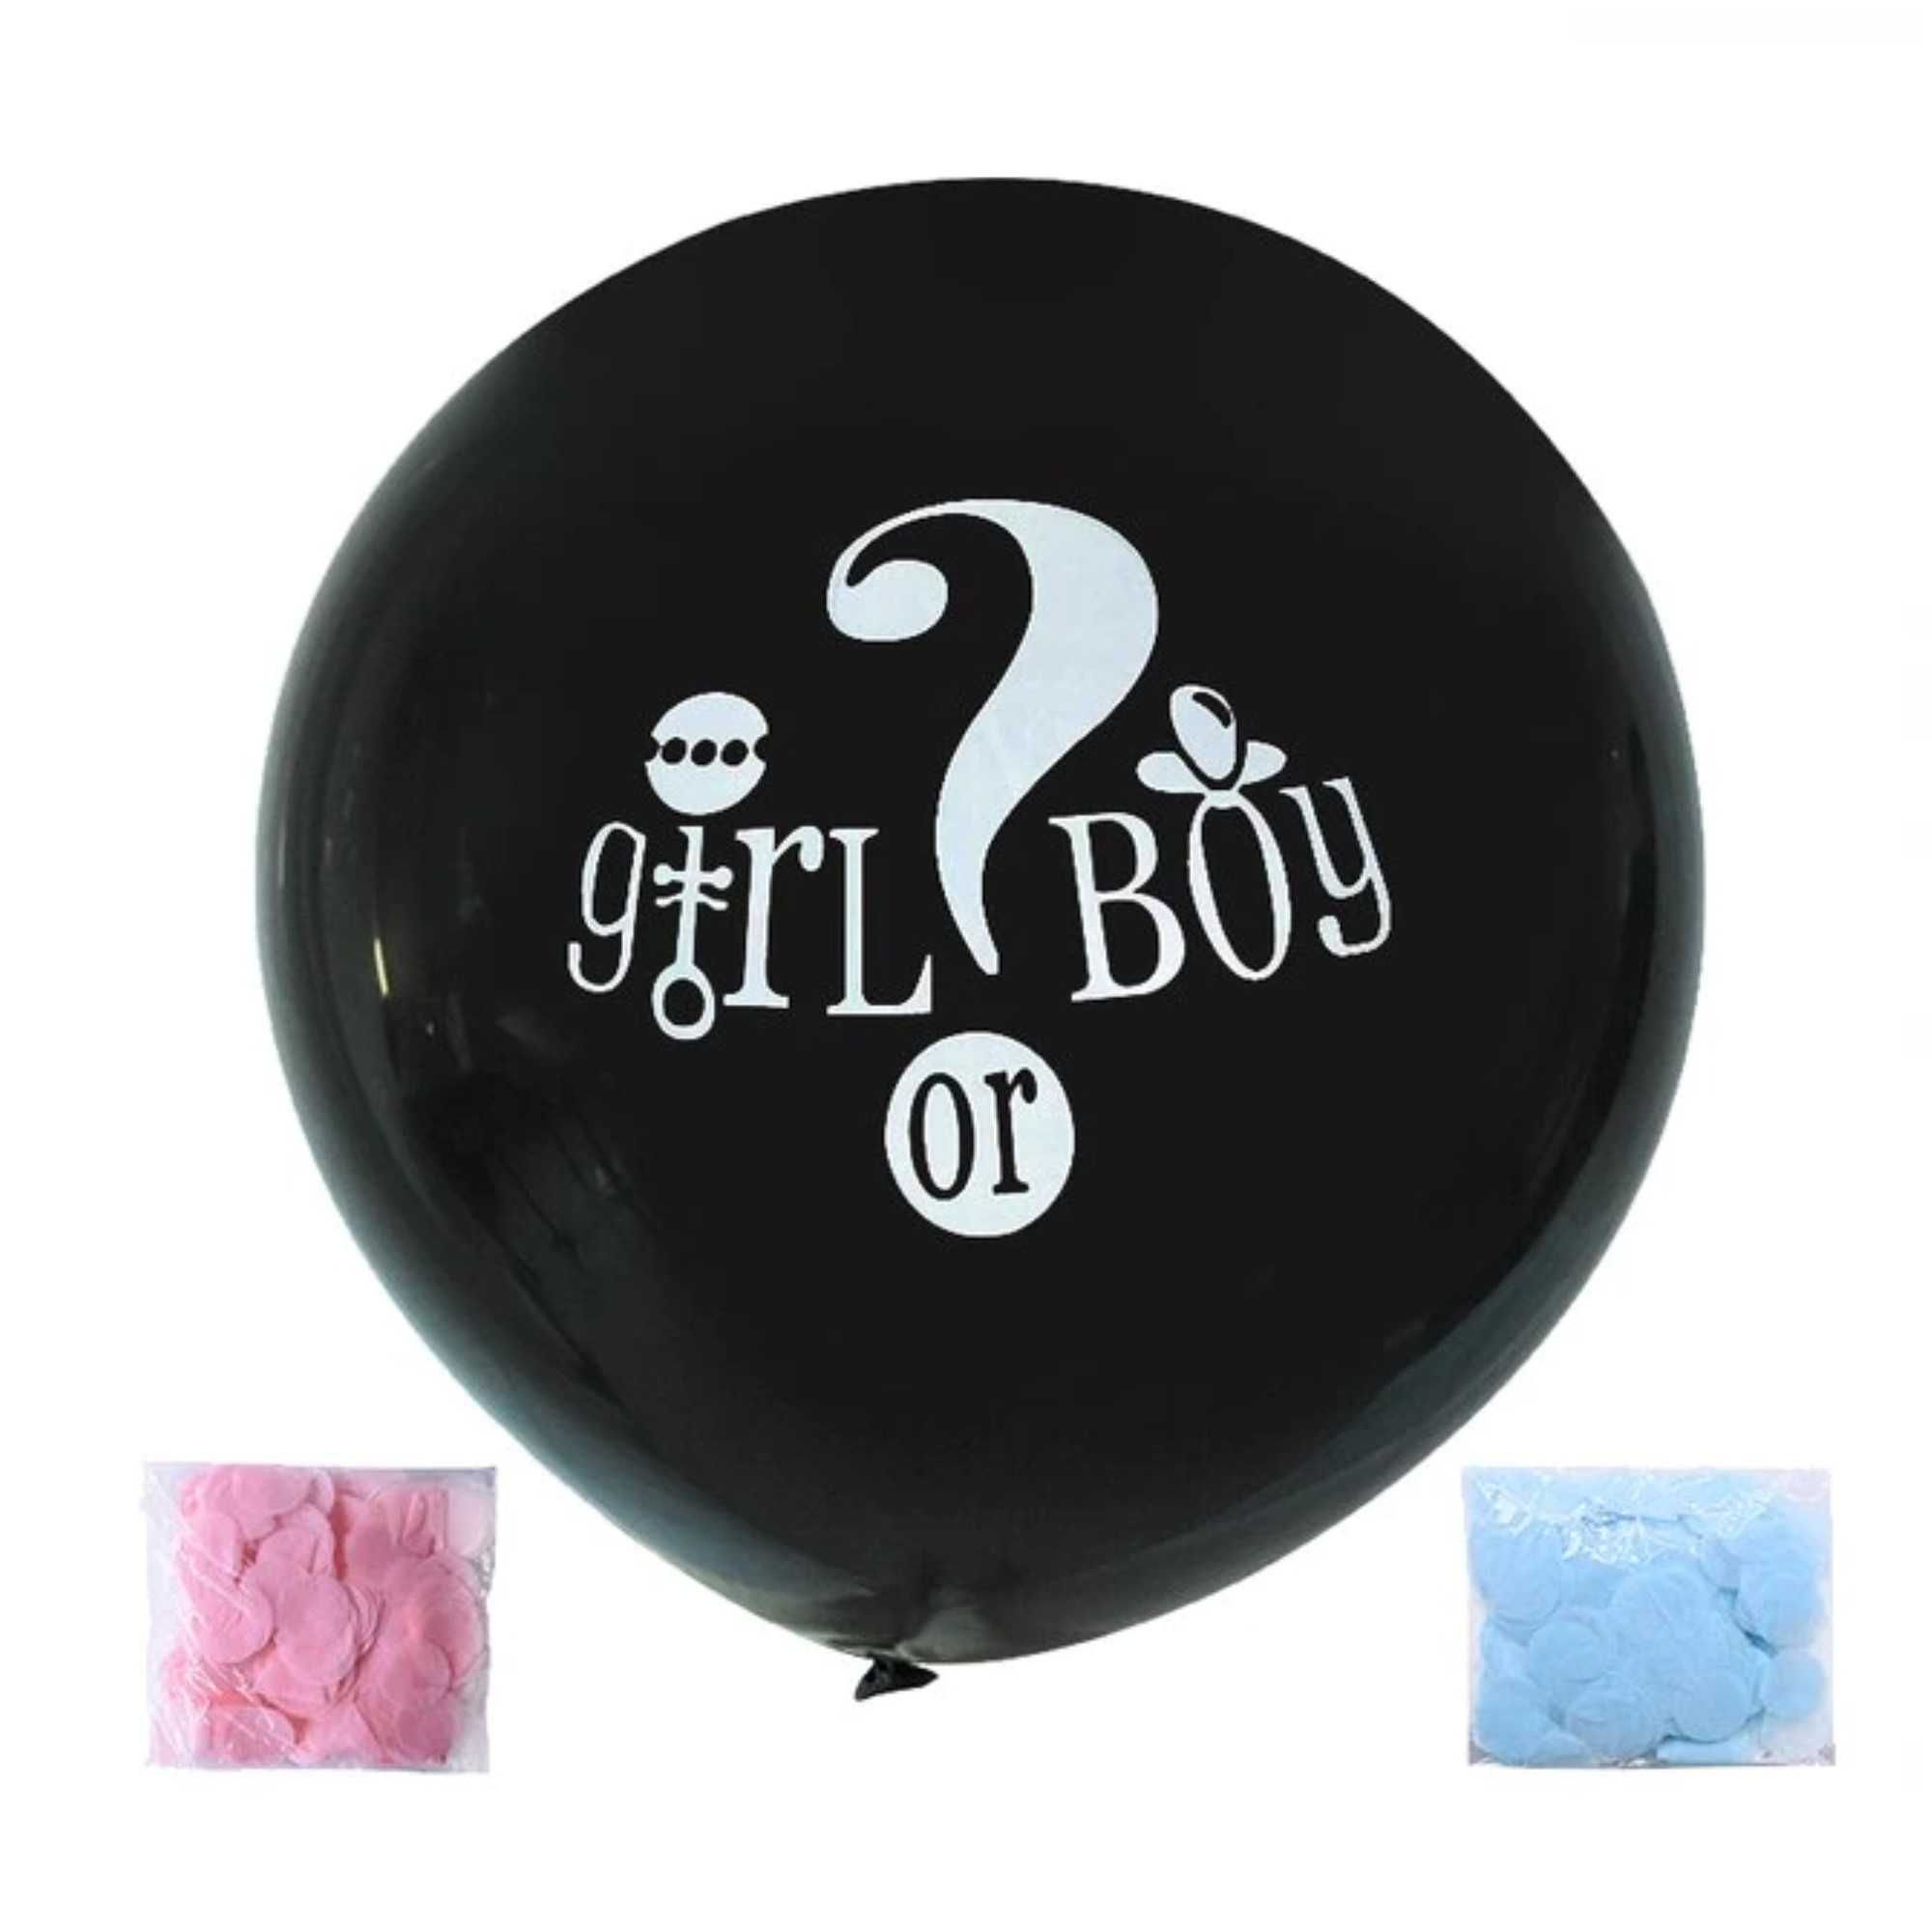 Balon Gender Revial jumbo 90 cm